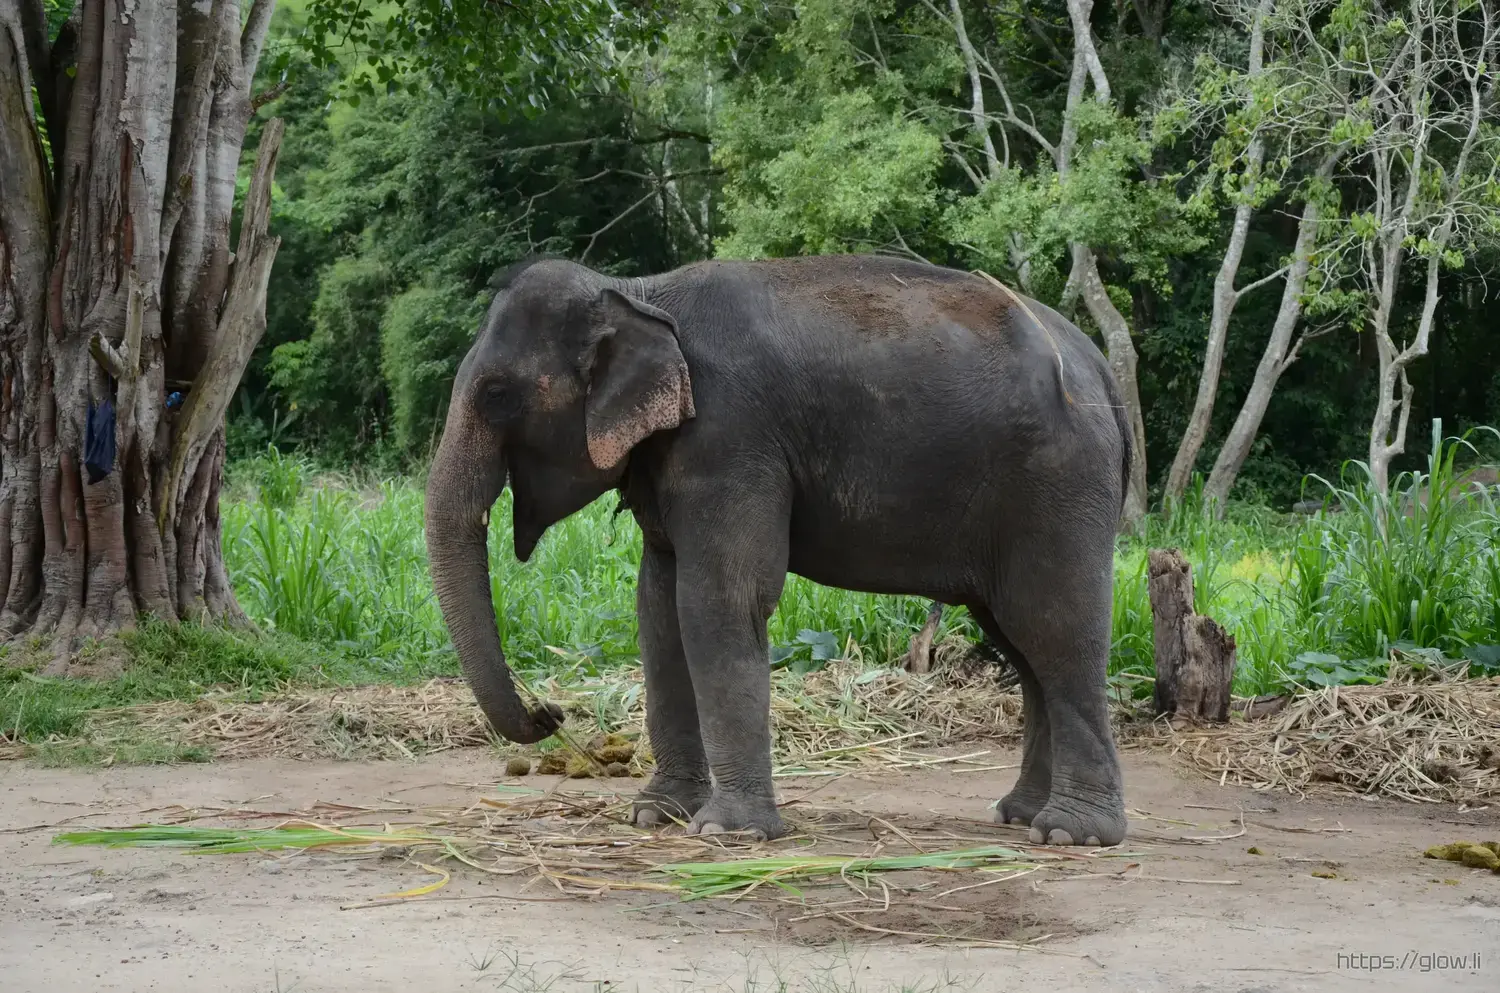 A photograph of an elephant